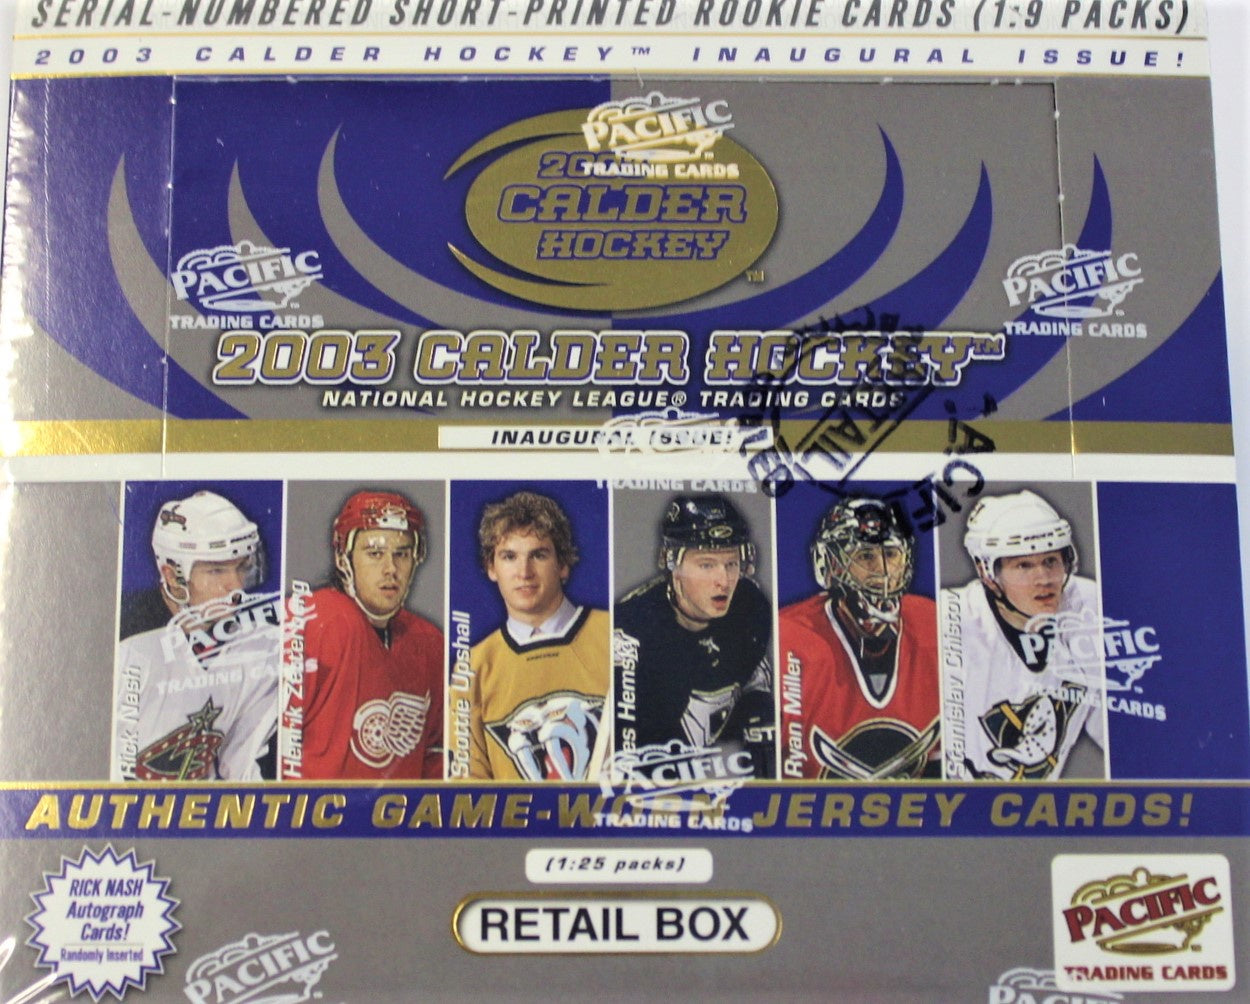 2002-03 Pacific Calder Hockey Retail Box - Miraj Trading